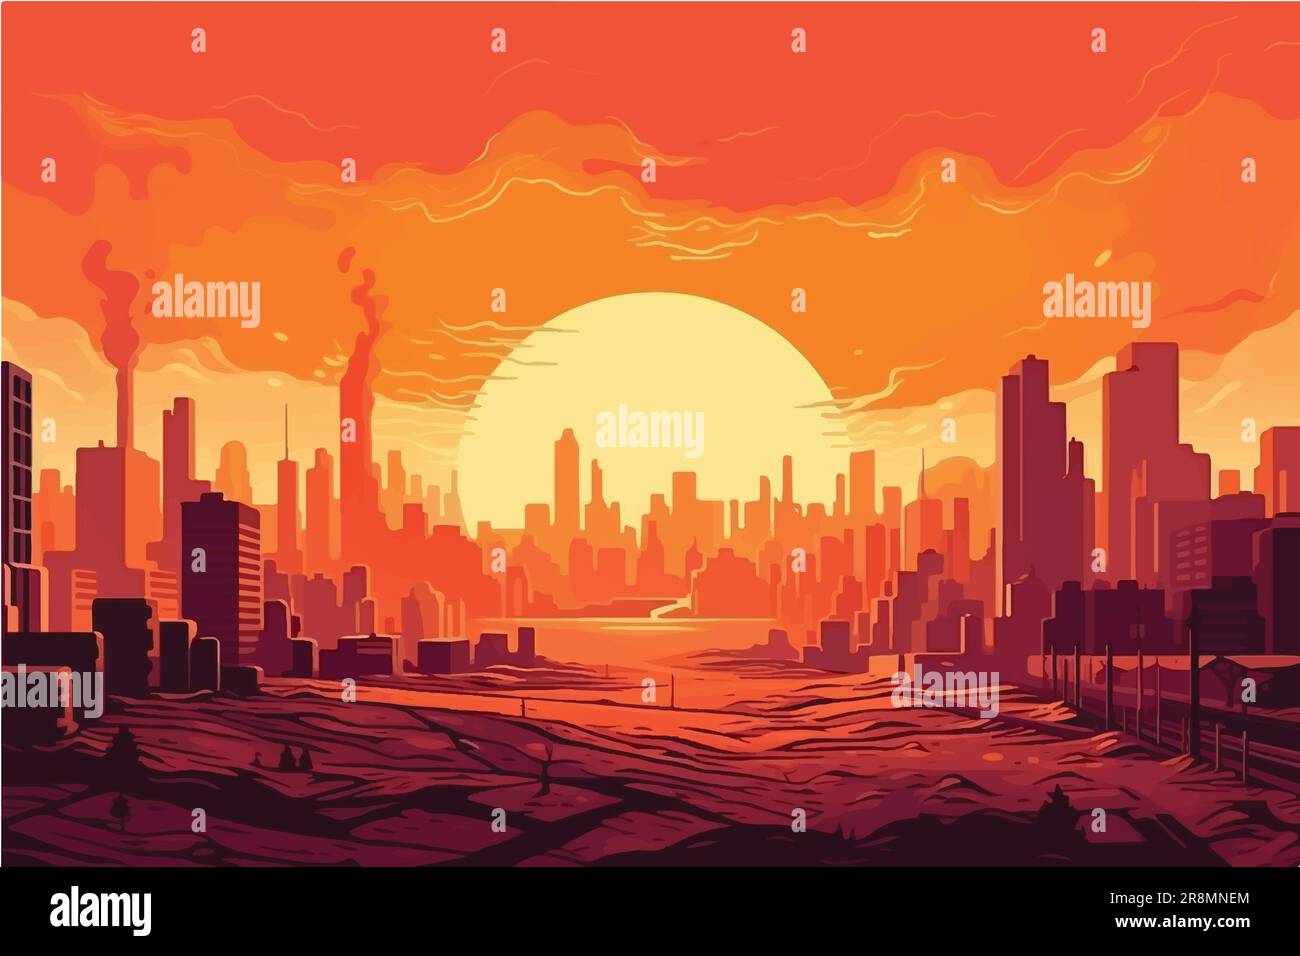 Illustration vectorielle de l'horizon urbain à couper le ciel, Cityscape s'est engouffrée dans la chaleur atmosphérique rouge-chaude Illustration de Vecteur